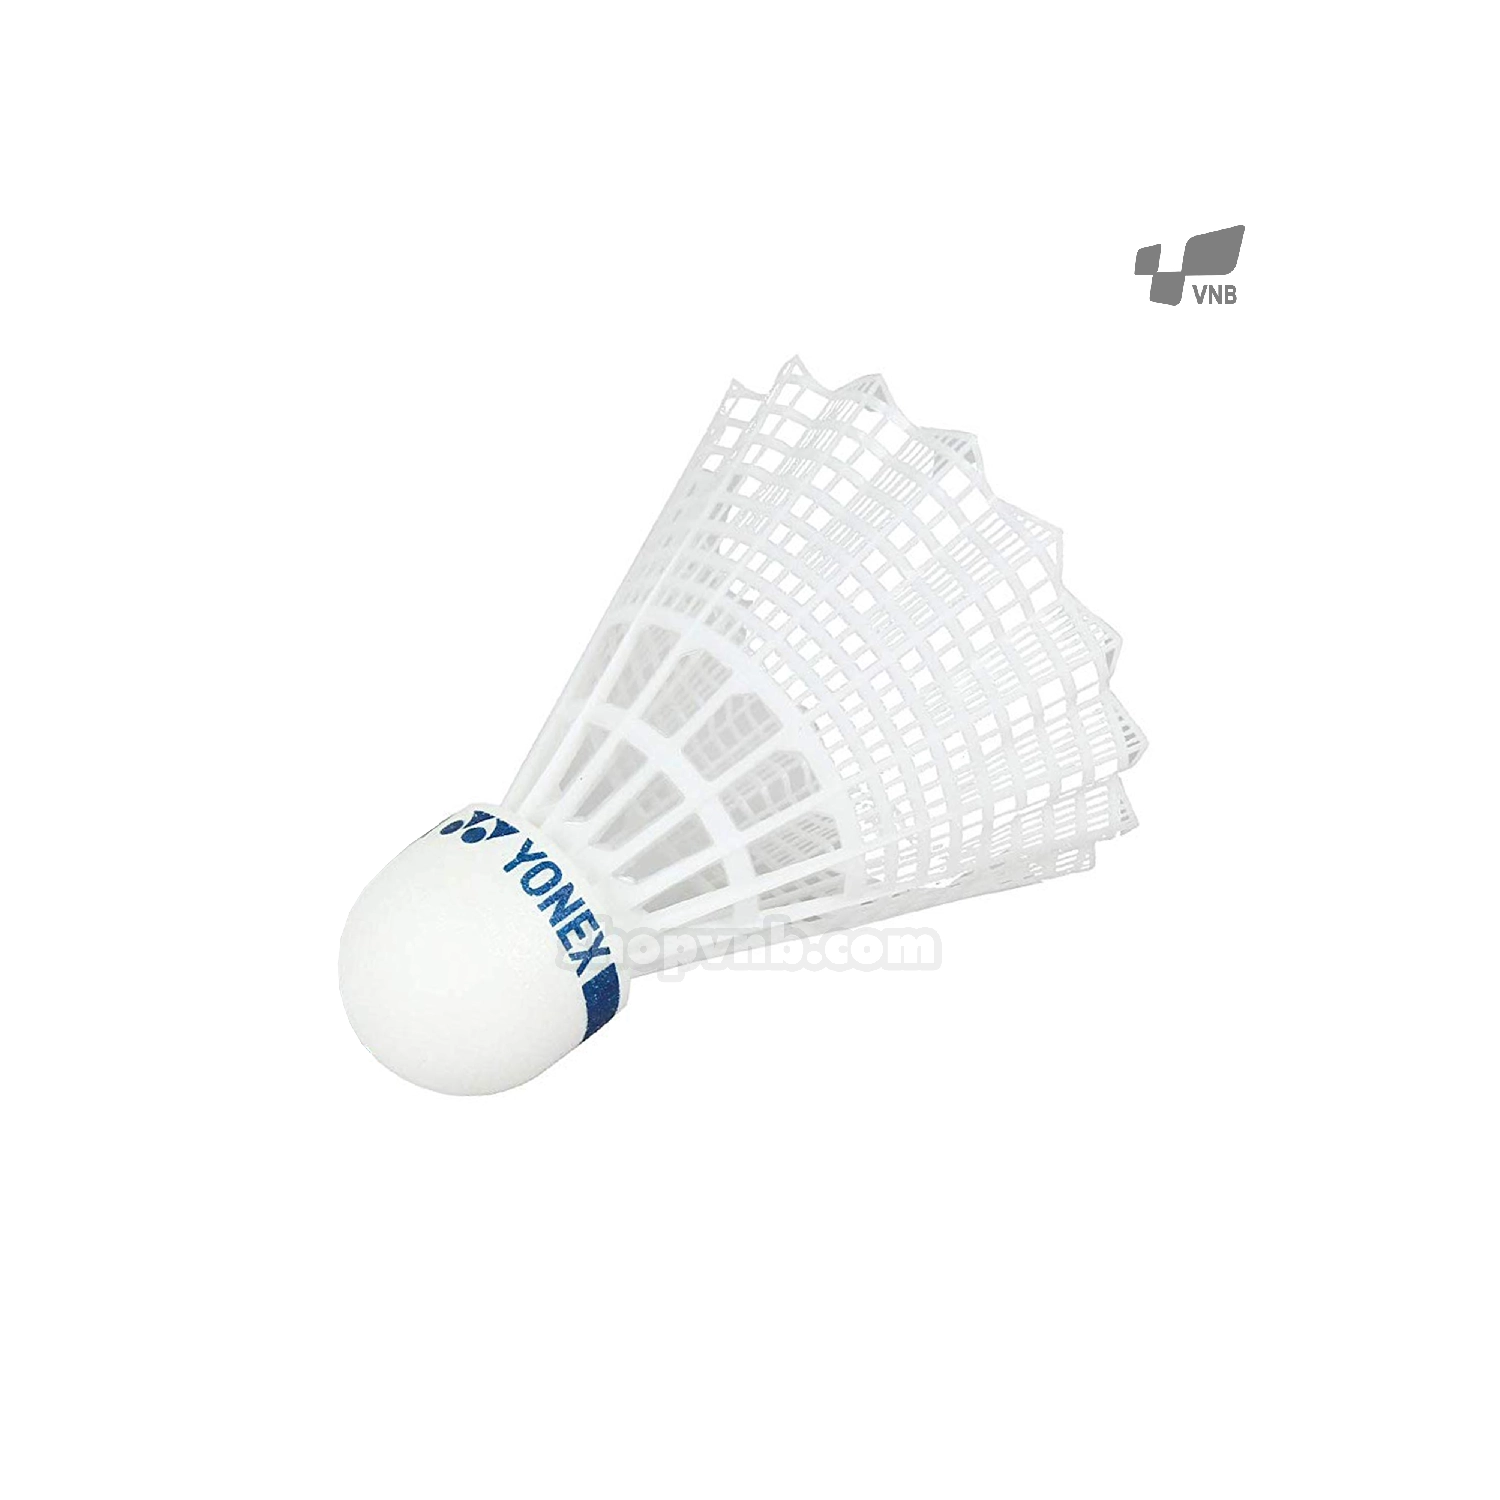 Ống cầu lông nhựa Yonex MAV 10 (1 trái) trắng